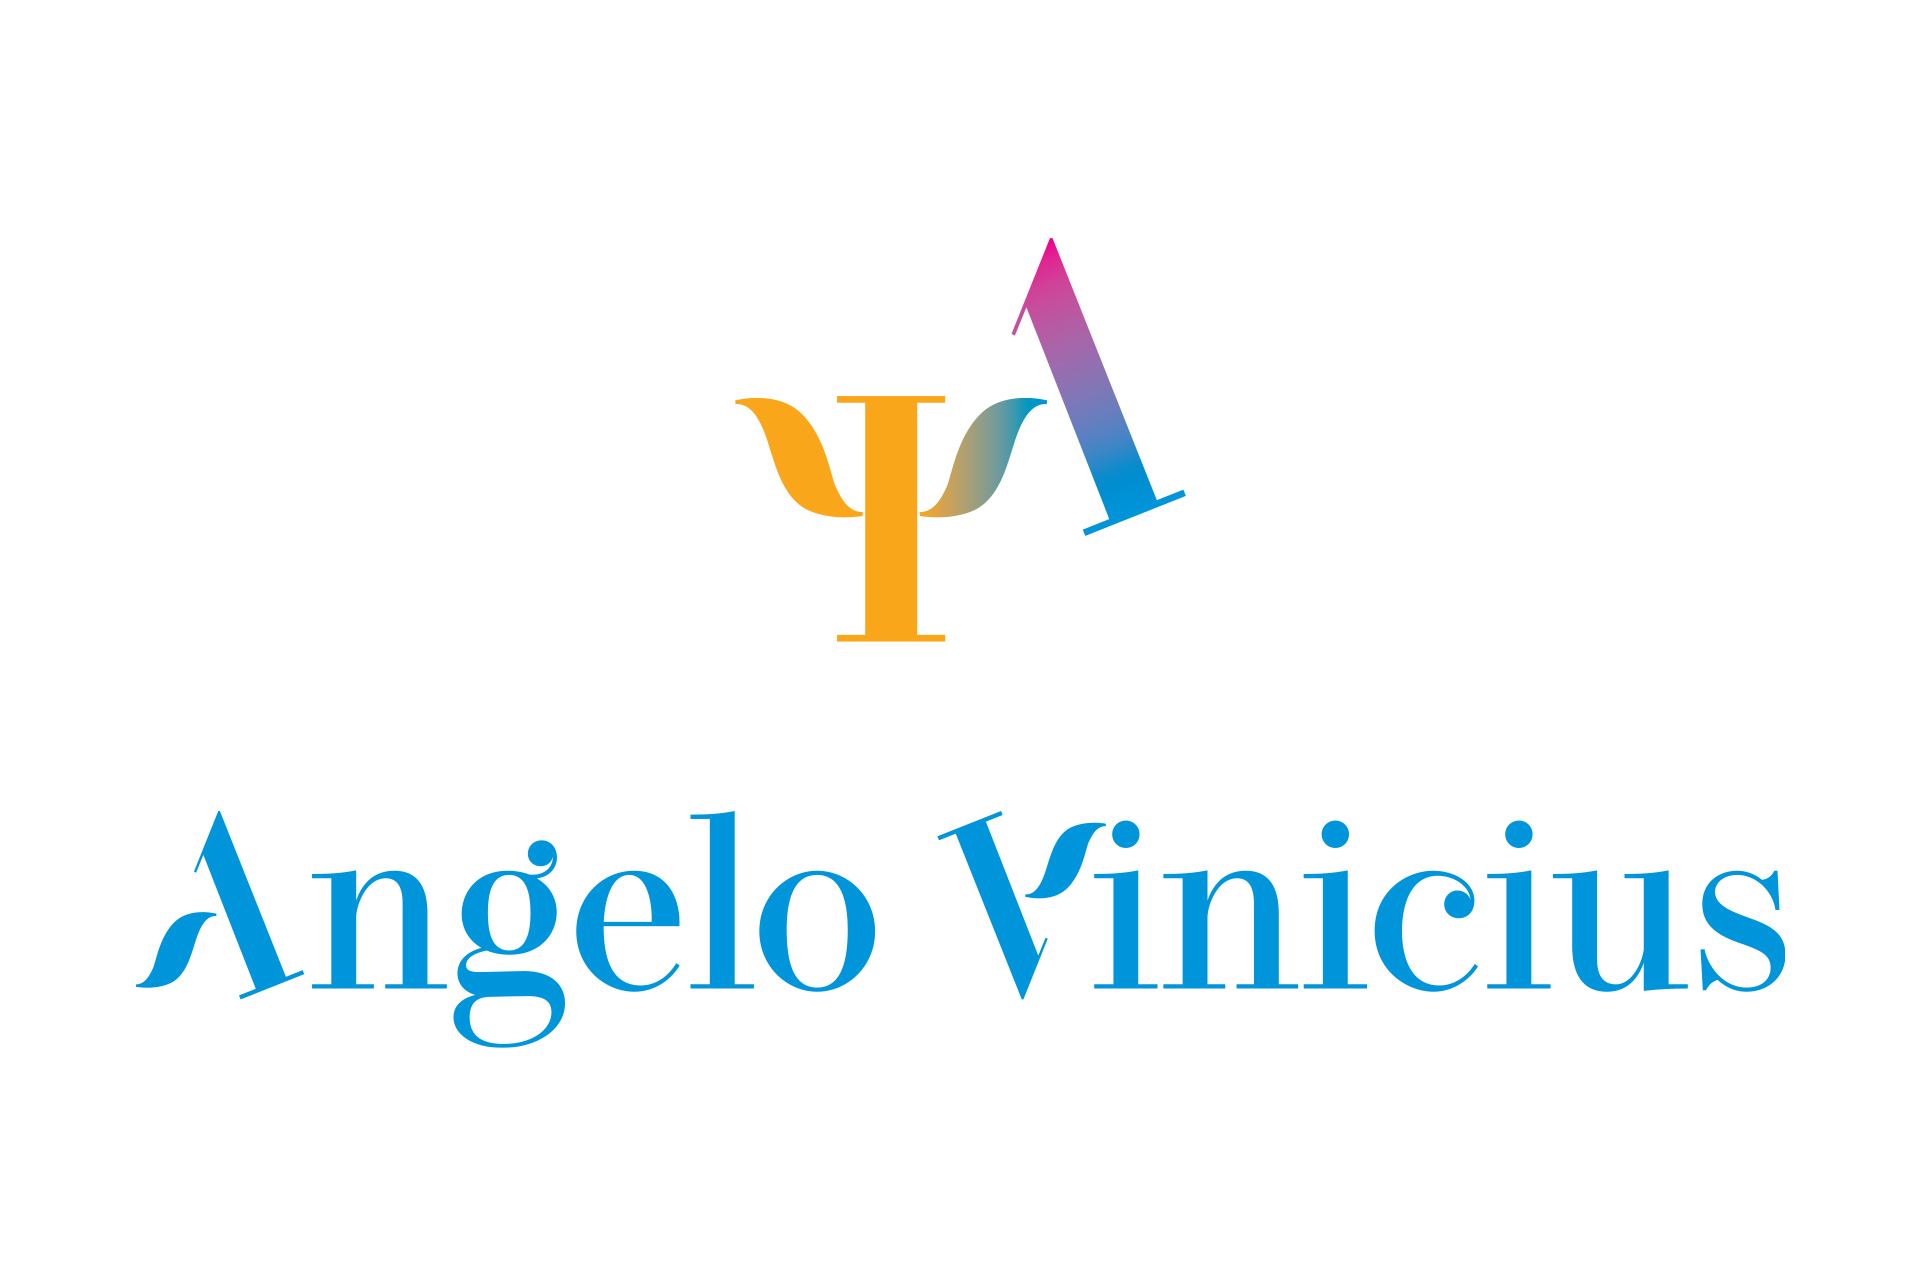 ANGELO VINICIUS